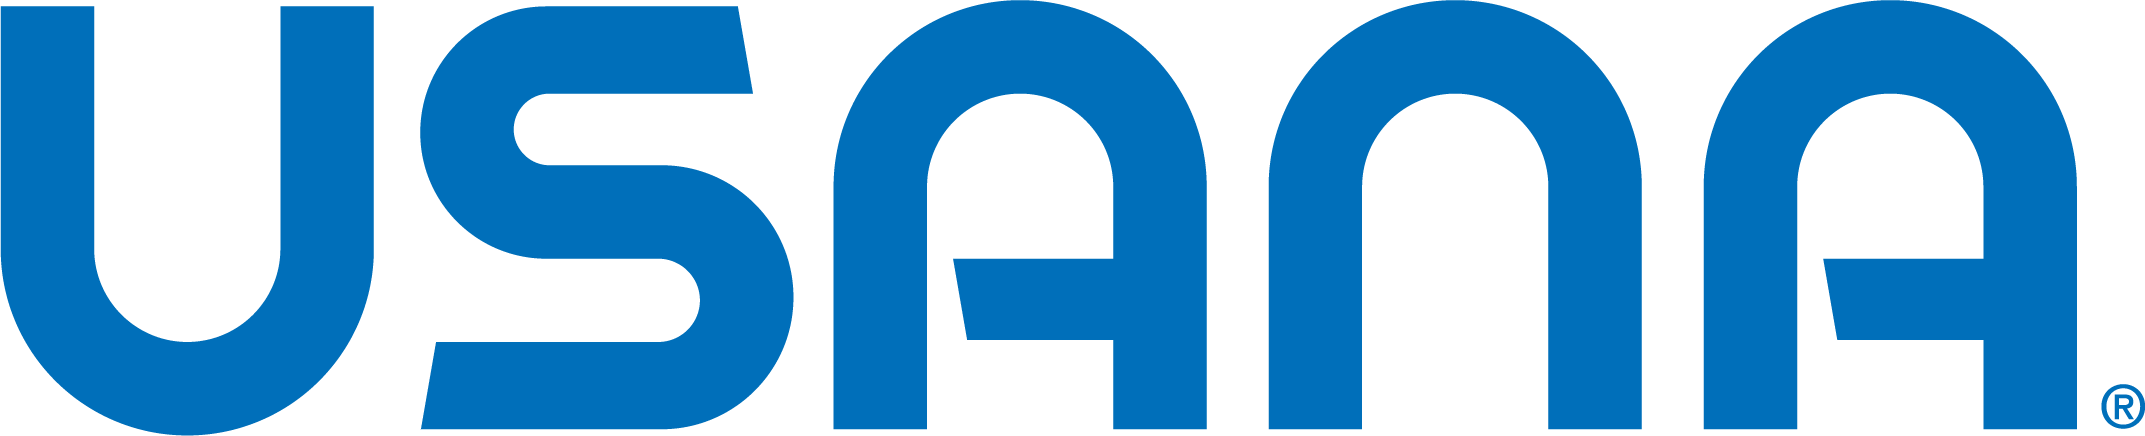 나의 검색 기업 유사나헬스사이언스코리아의 로고 이미지